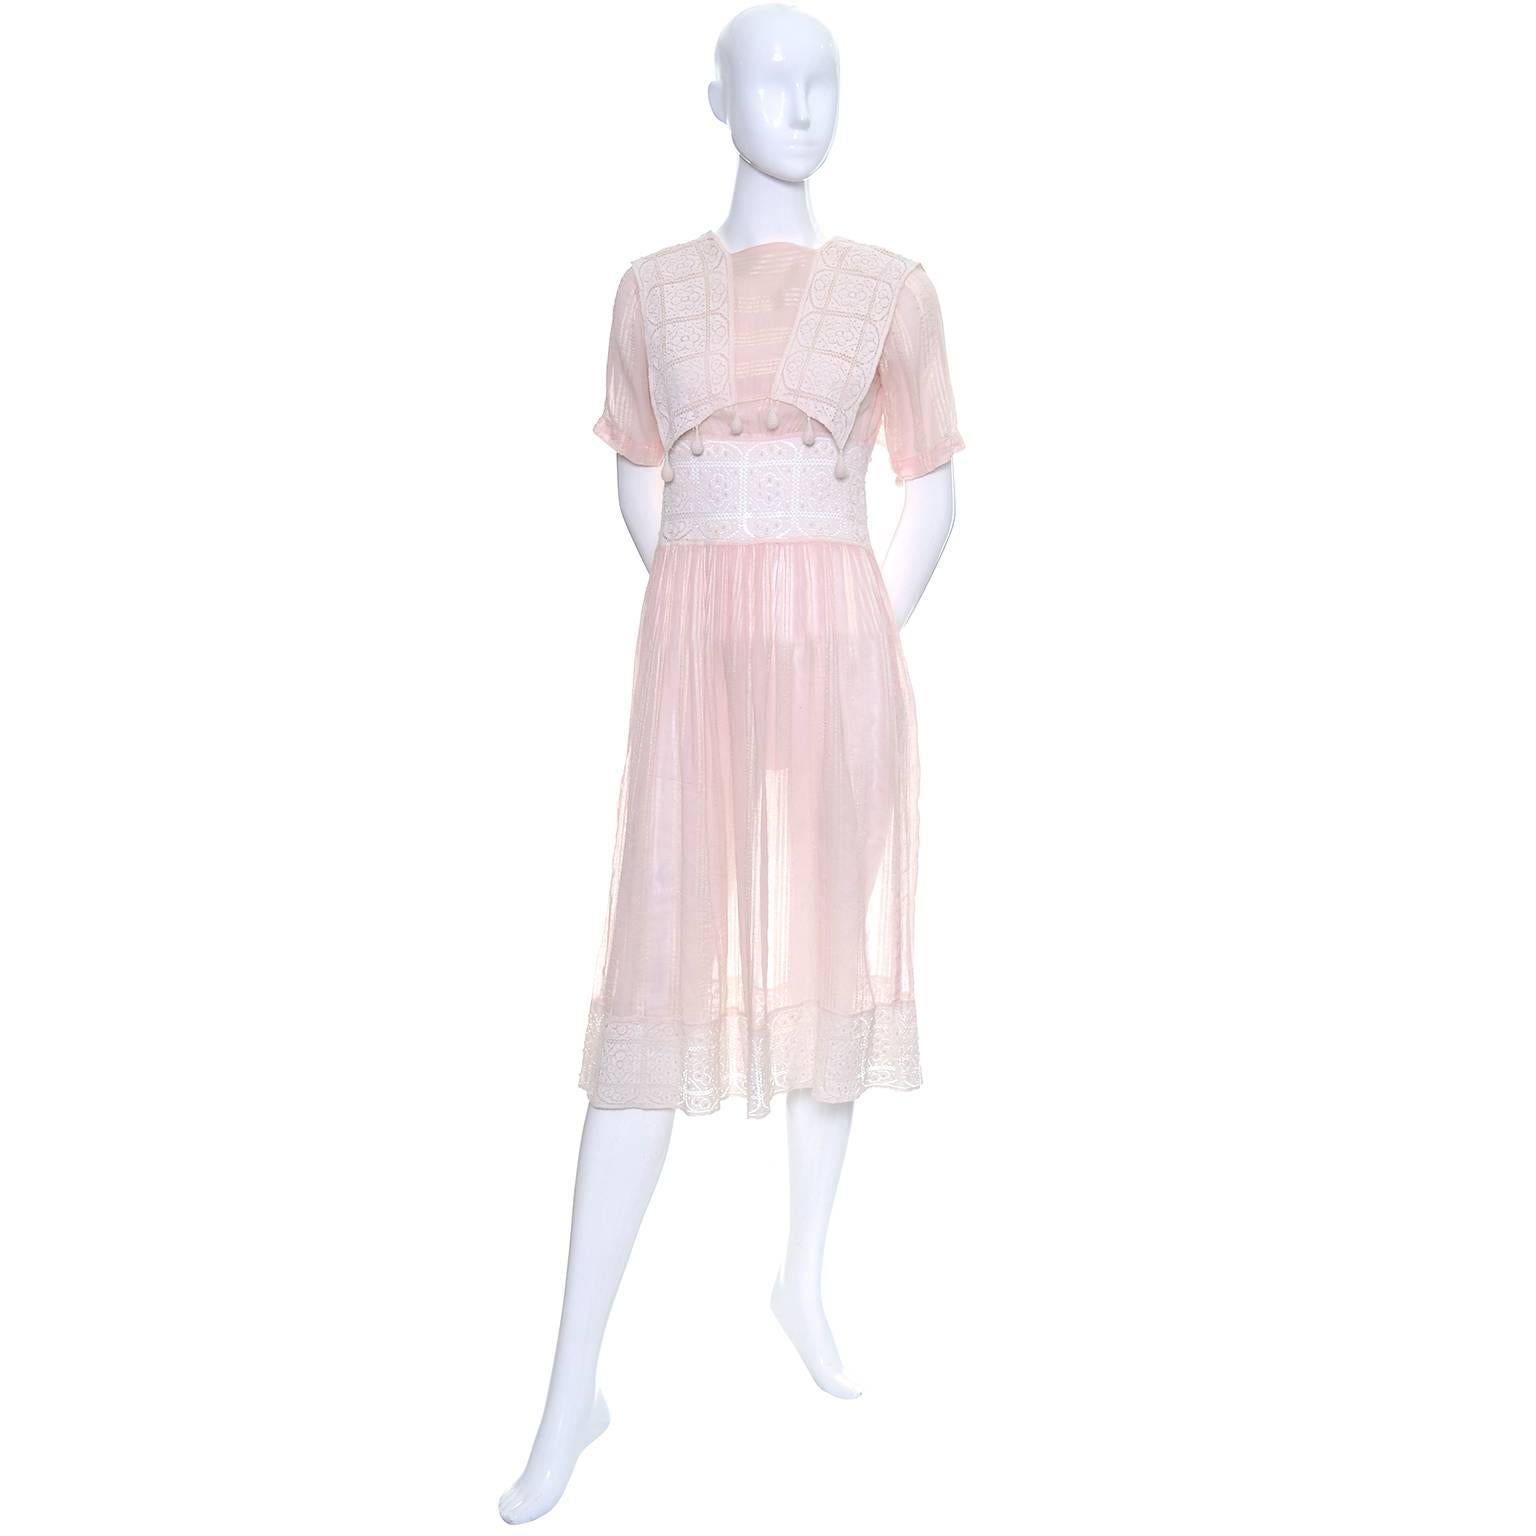 Cette jolie robe vintage est faite dans un voile de coton rose semi-transparent avec des rayures ton sur ton et une belle dentelle au crochet.  La robe se ferme par des boutons-pression à plusieurs endroits et le joli corsage présente des pendentifs